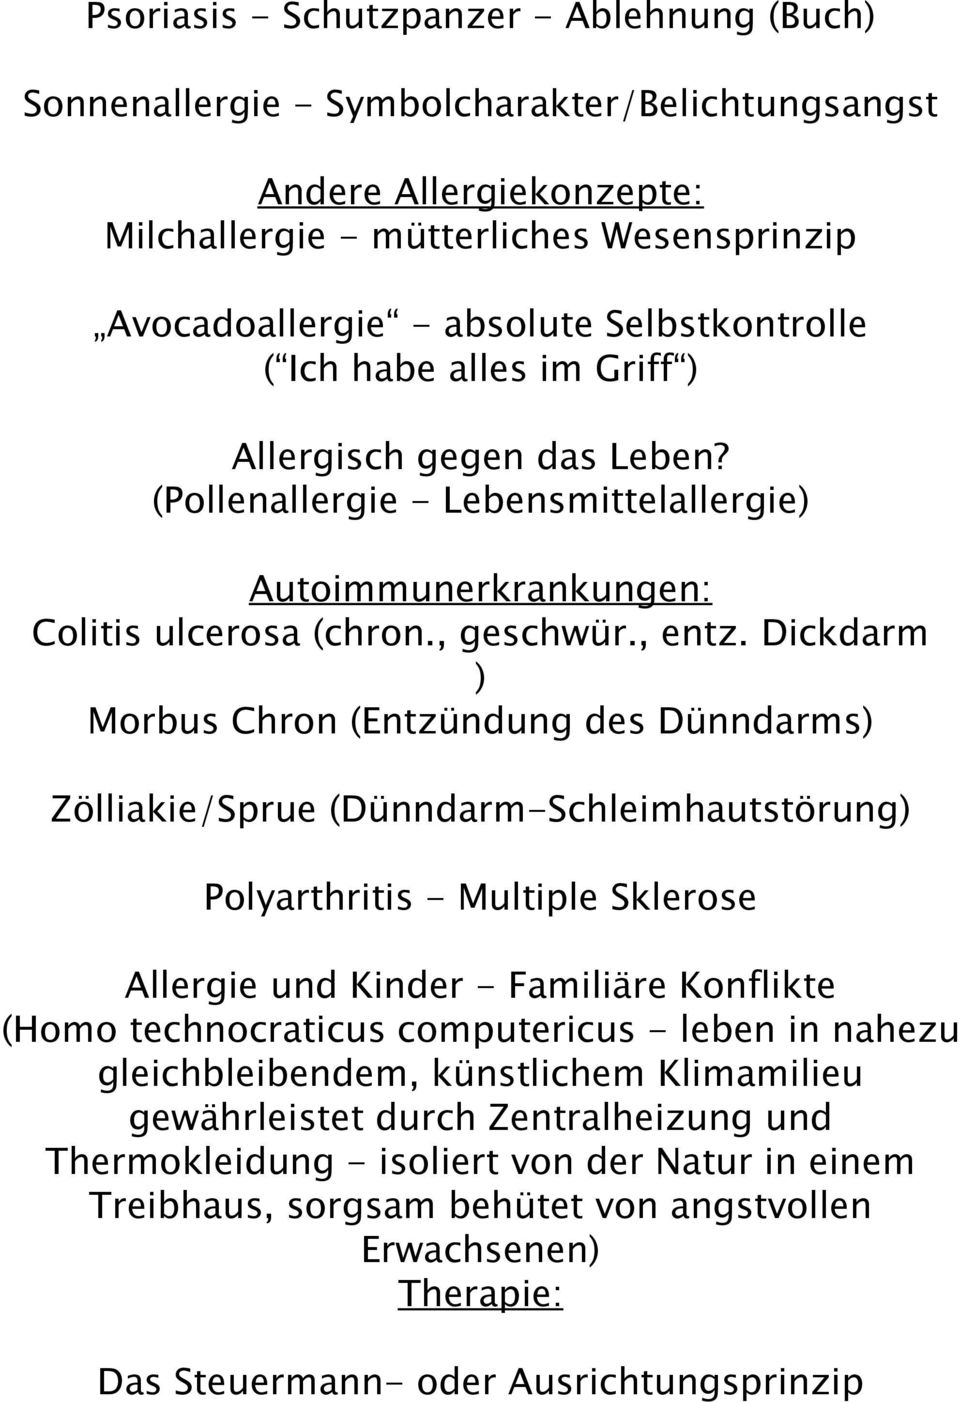 Dickdarm ) Morbus Chron (Entzündung des Dünndarms) Zölliakie/Sprue (Dünndarm-Schleimhautstörung) Polyarthritis - Multiple Sklerose Allergie und Kinder - Familiäre Konflikte (Homo technocraticus